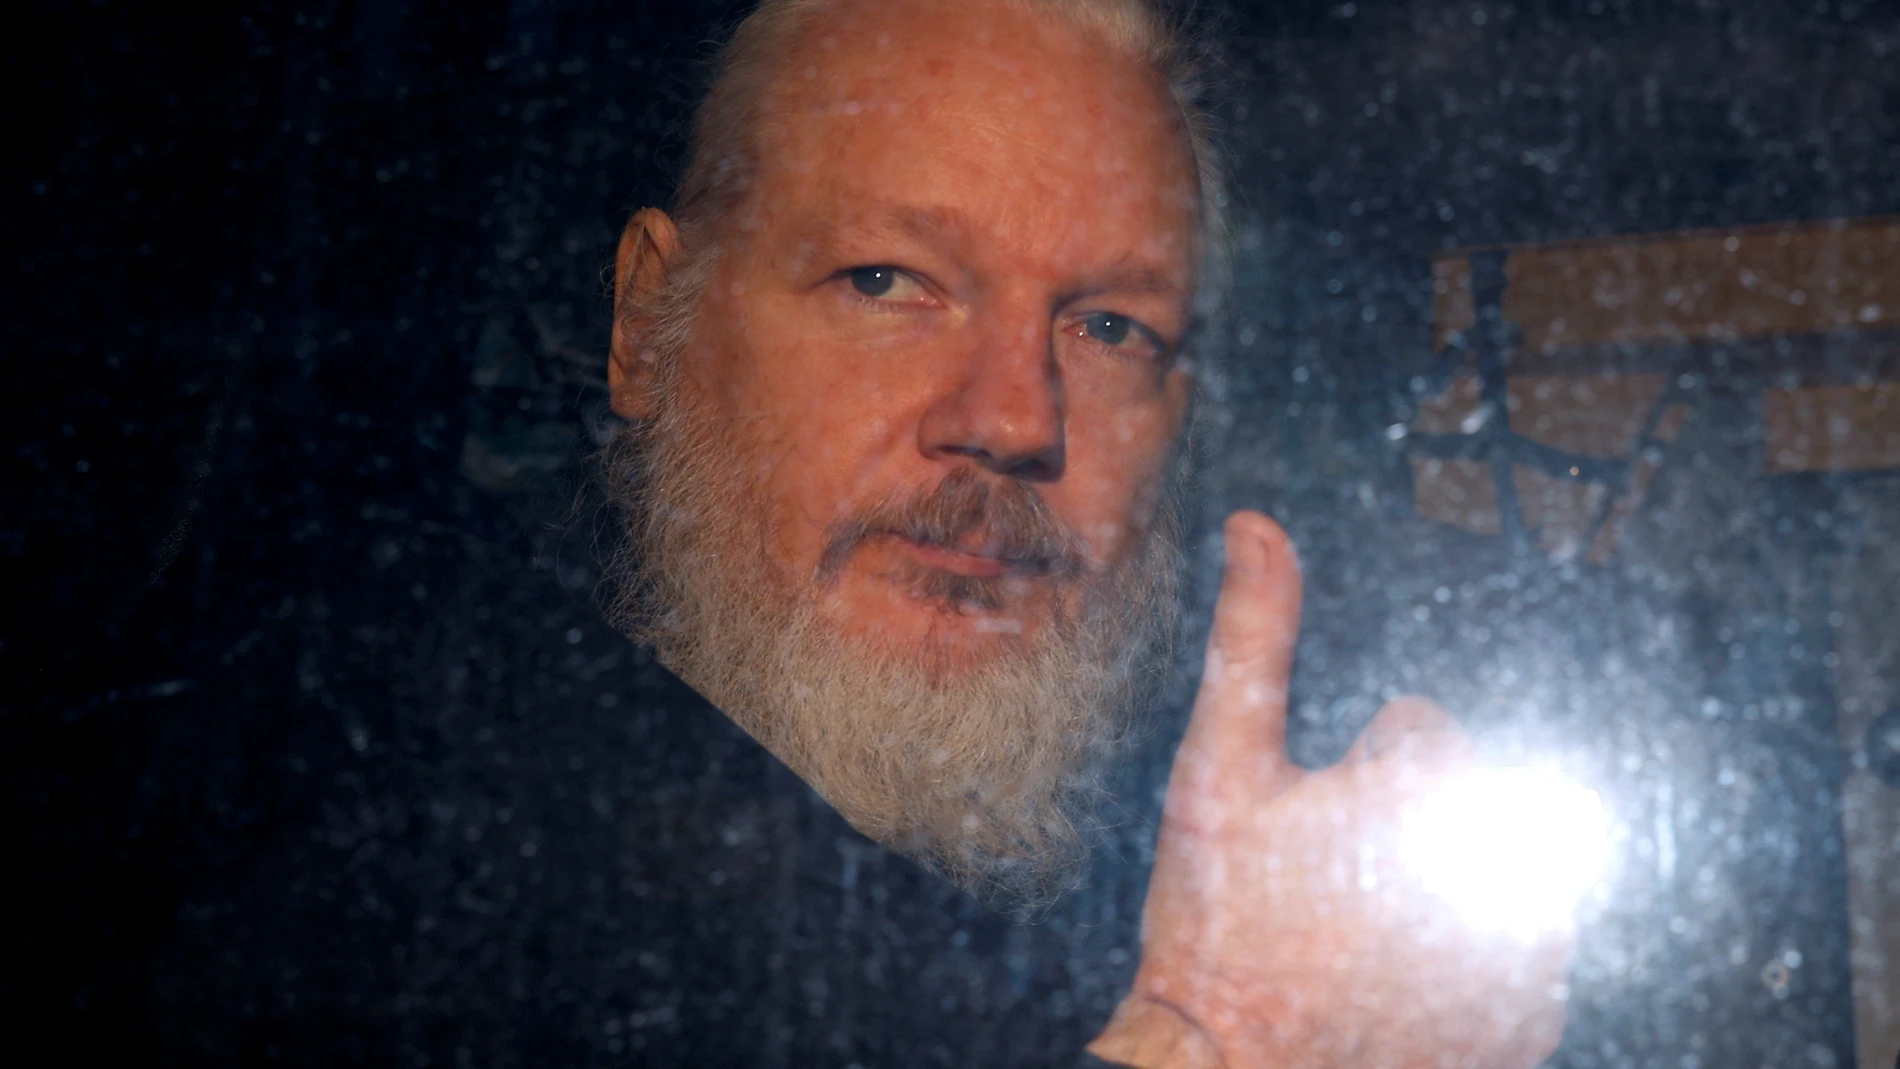 FILE PHOTO: WikiLeaks founder Julian Assange is seen as he leaves a police station in London